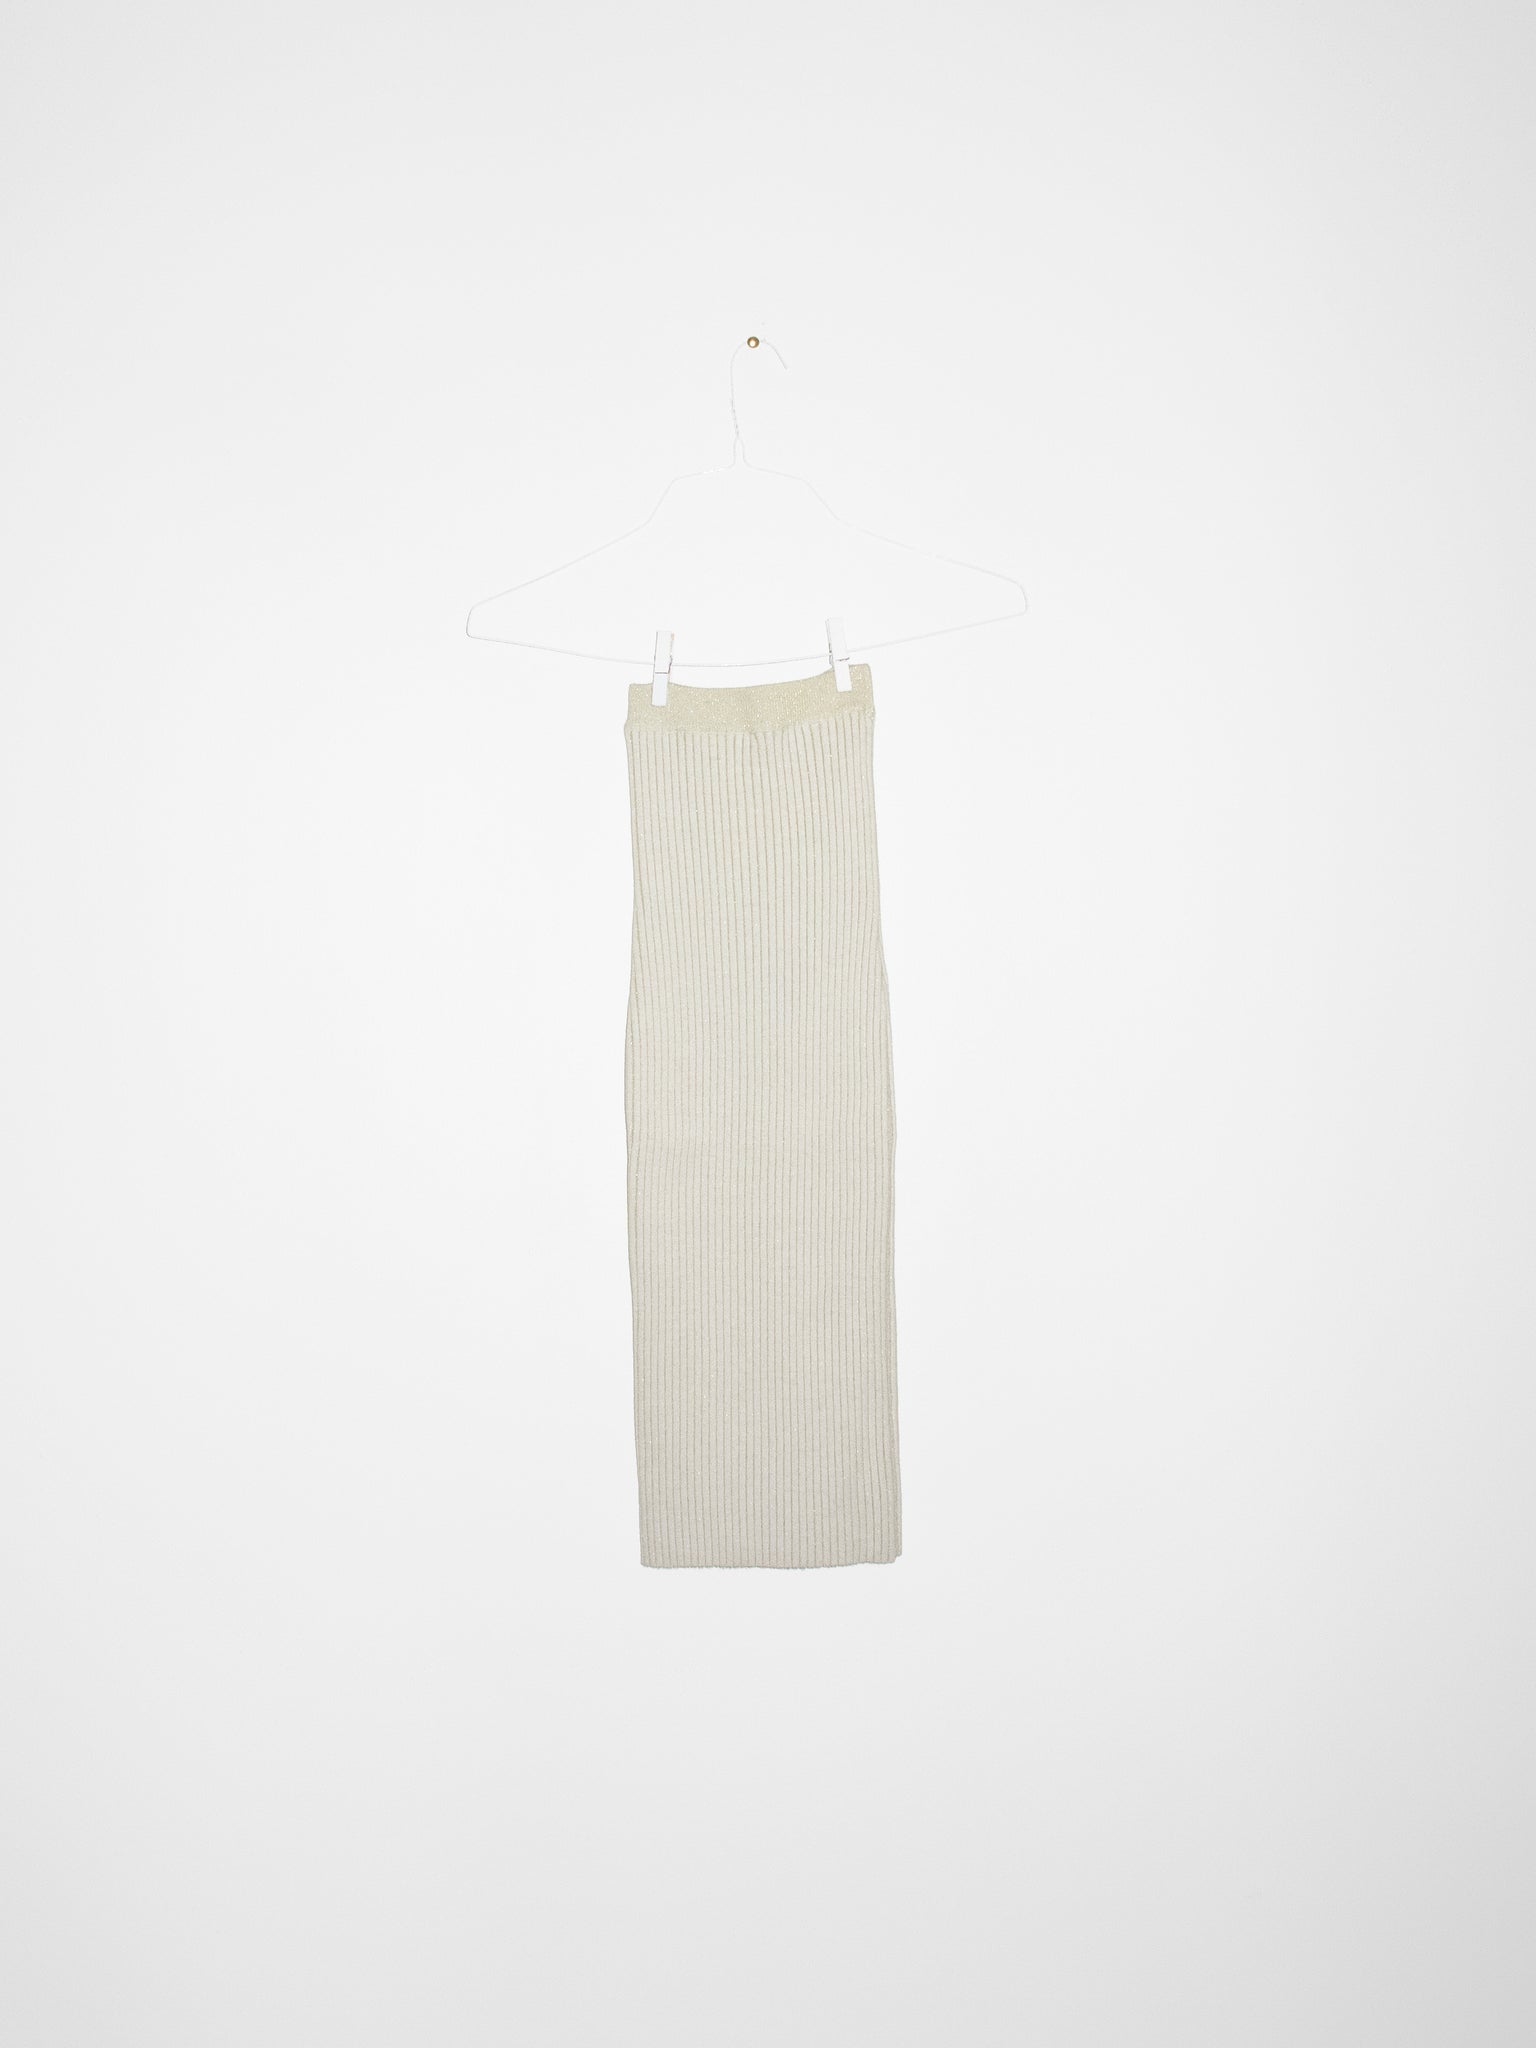 NONNA Tube Skirt in Ivory Glitter *Sample*